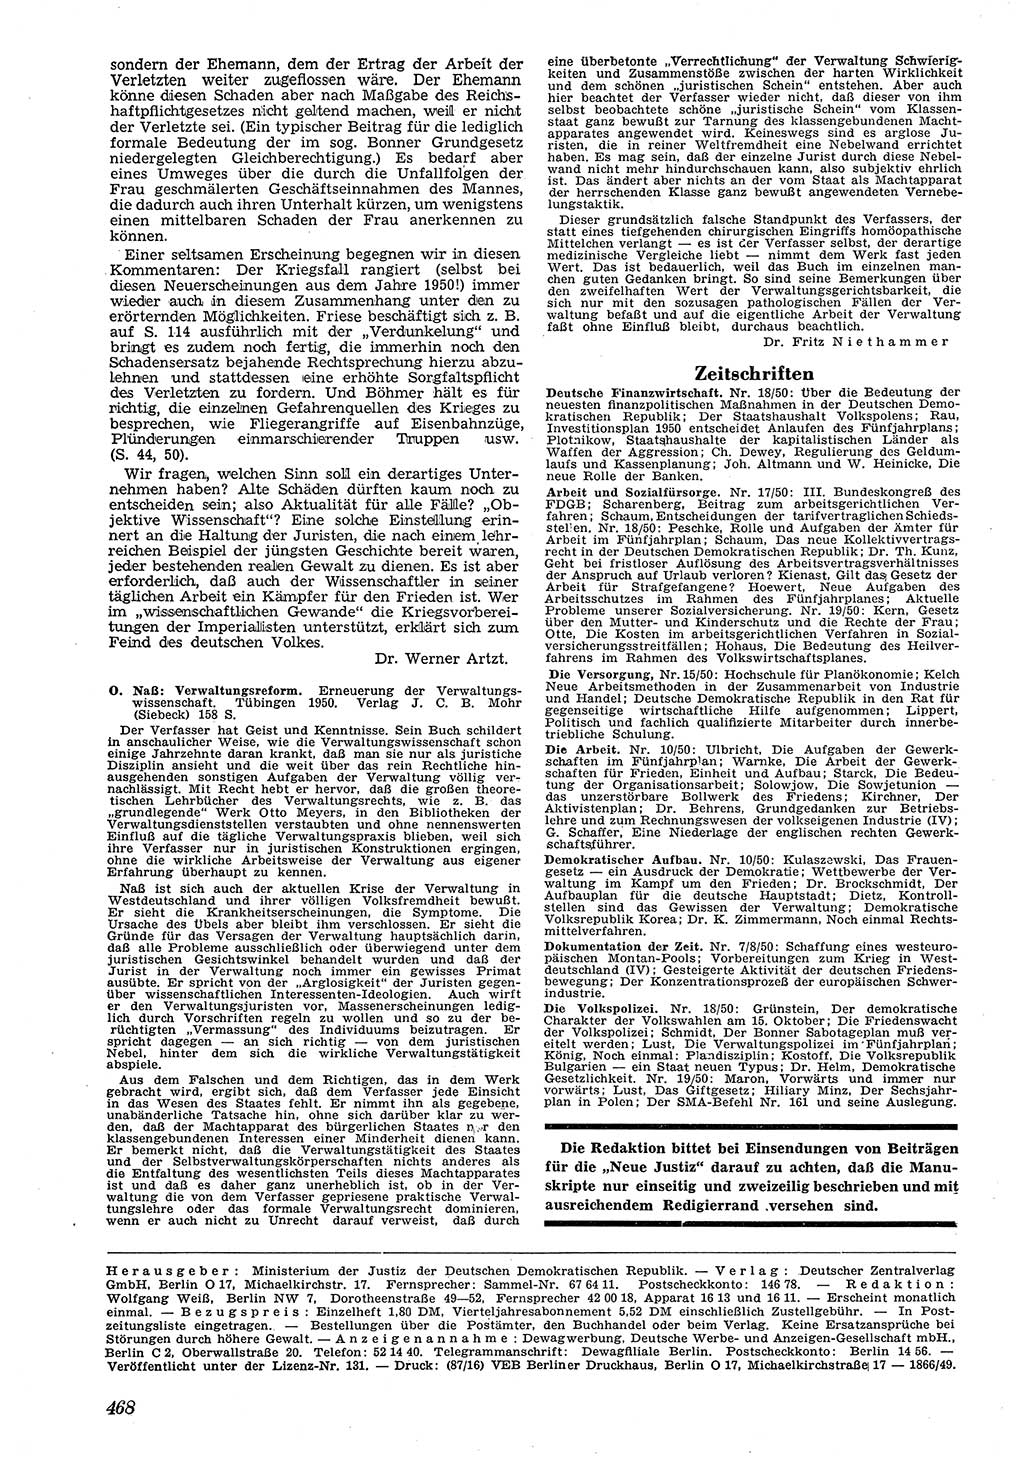 Neue Justiz (NJ), Zeitschrift für Recht und Rechtswissenschaft [Deutsche Demokratische Republik (DDR)], 4. Jahrgang 1950, Seite 468 (NJ DDR 1950, S. 468)